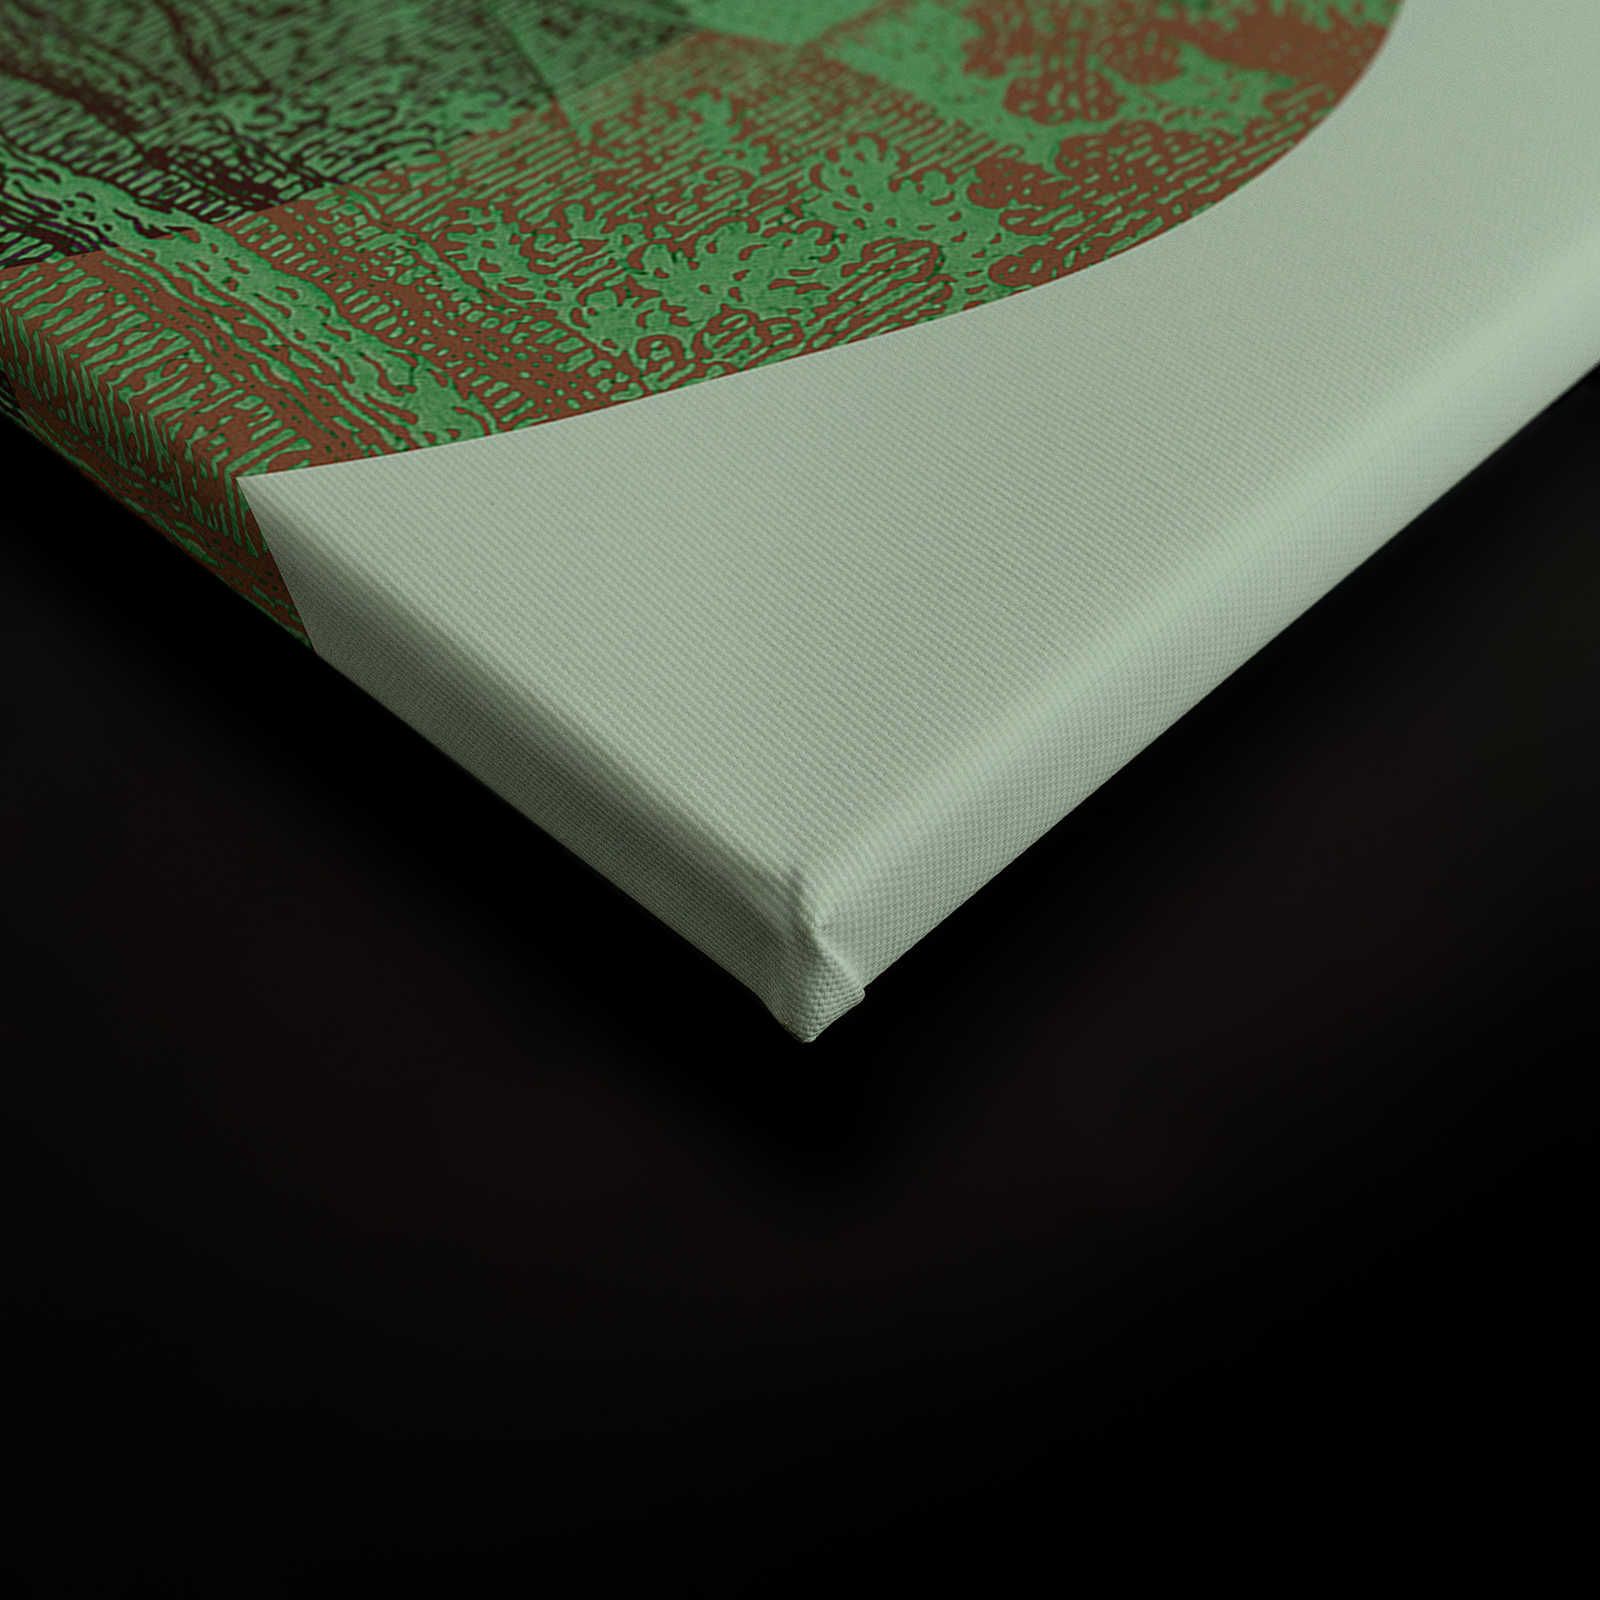             Magic Mountain 3 - Quadro su tela con montagne verdi dal design moderno - 0,90 m x 0,60 m
        